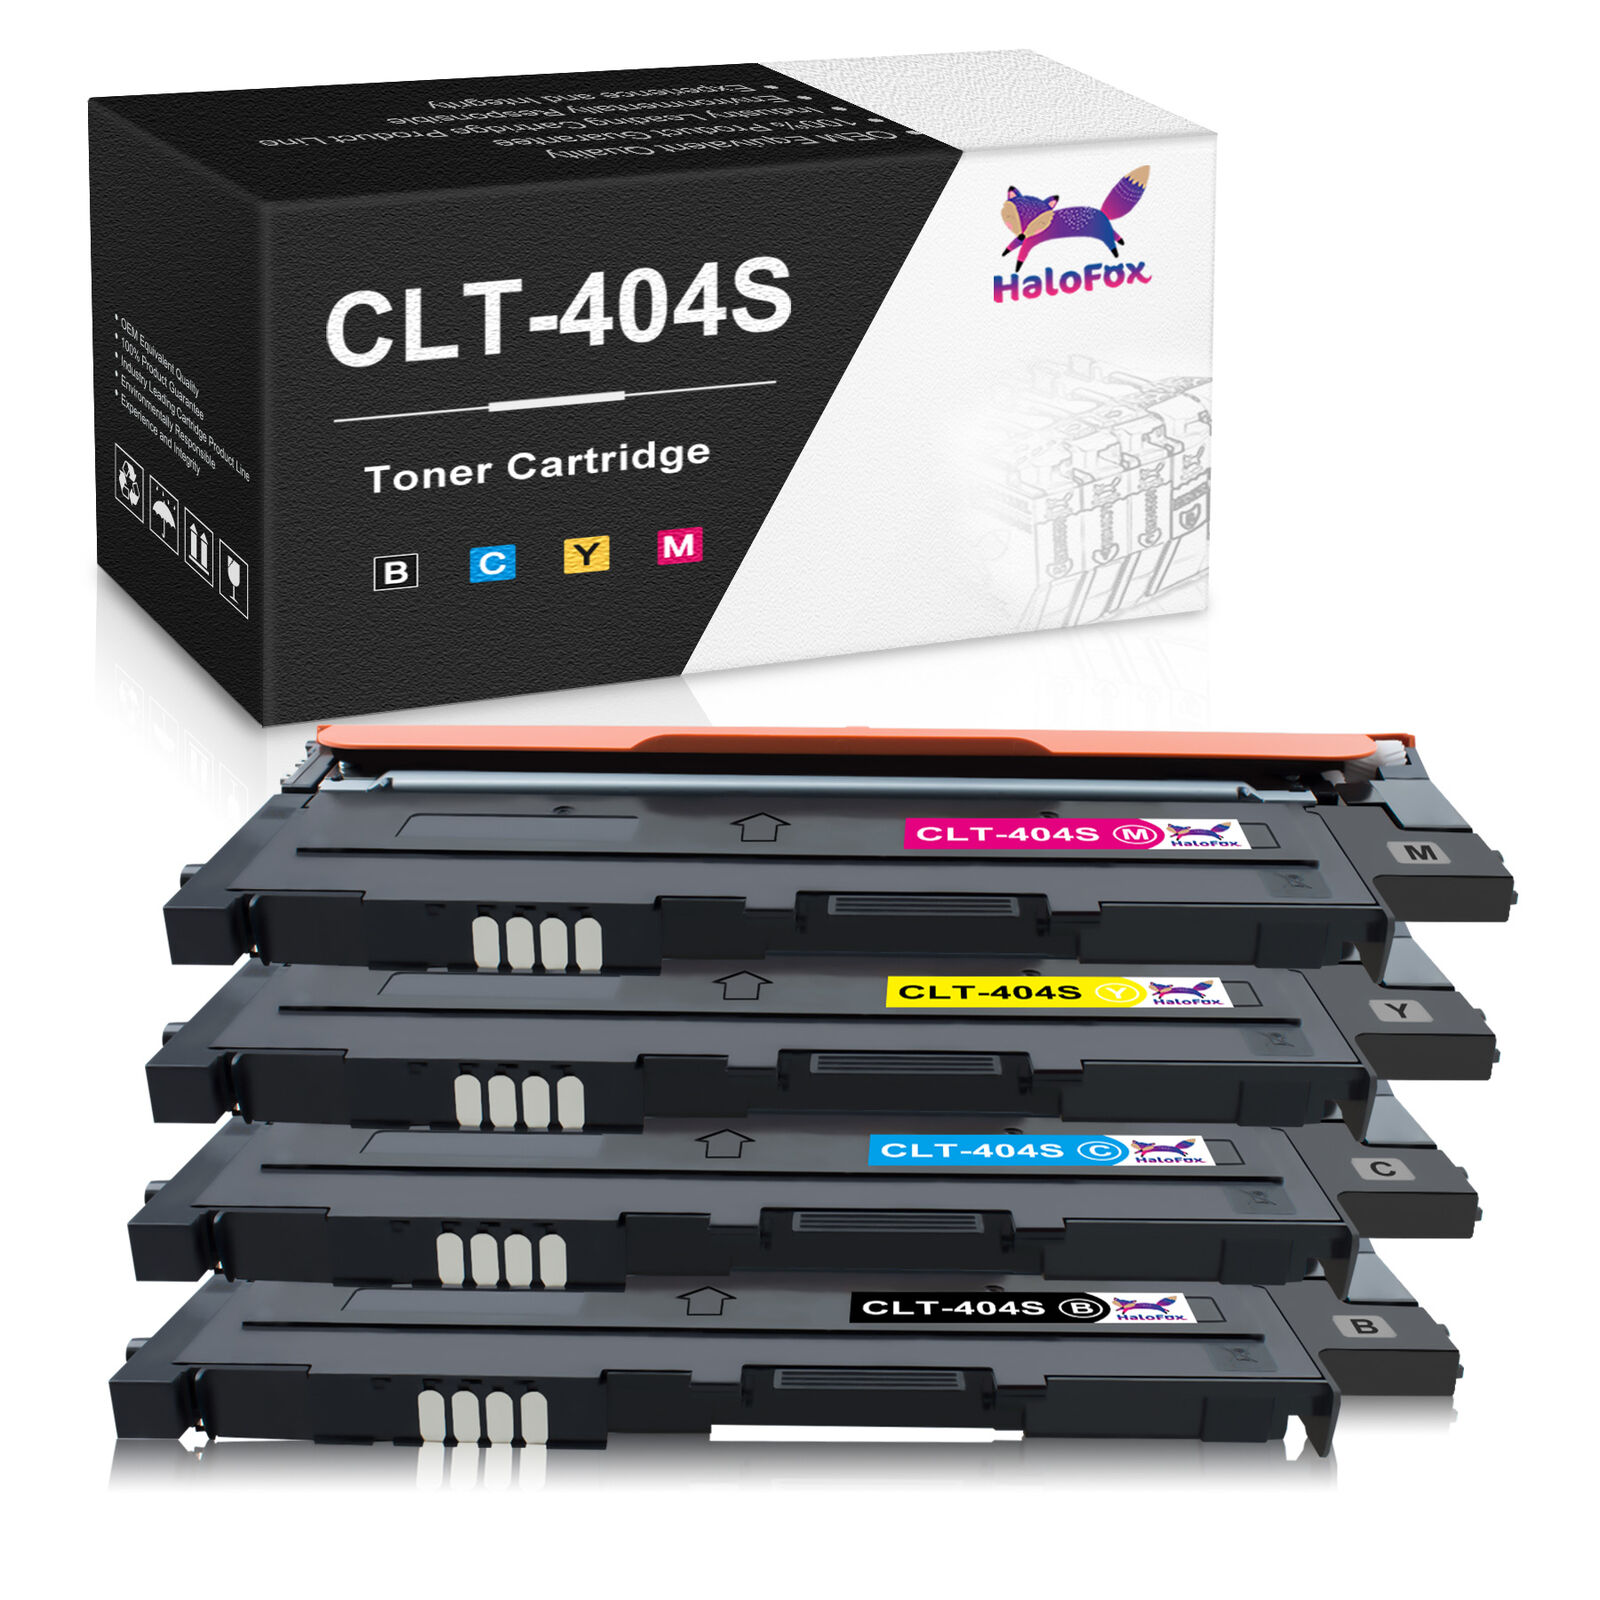 4Pack CLT-404S Toner Cartridge for Samsung Xpress C430 C430W C480 C480FW C480W